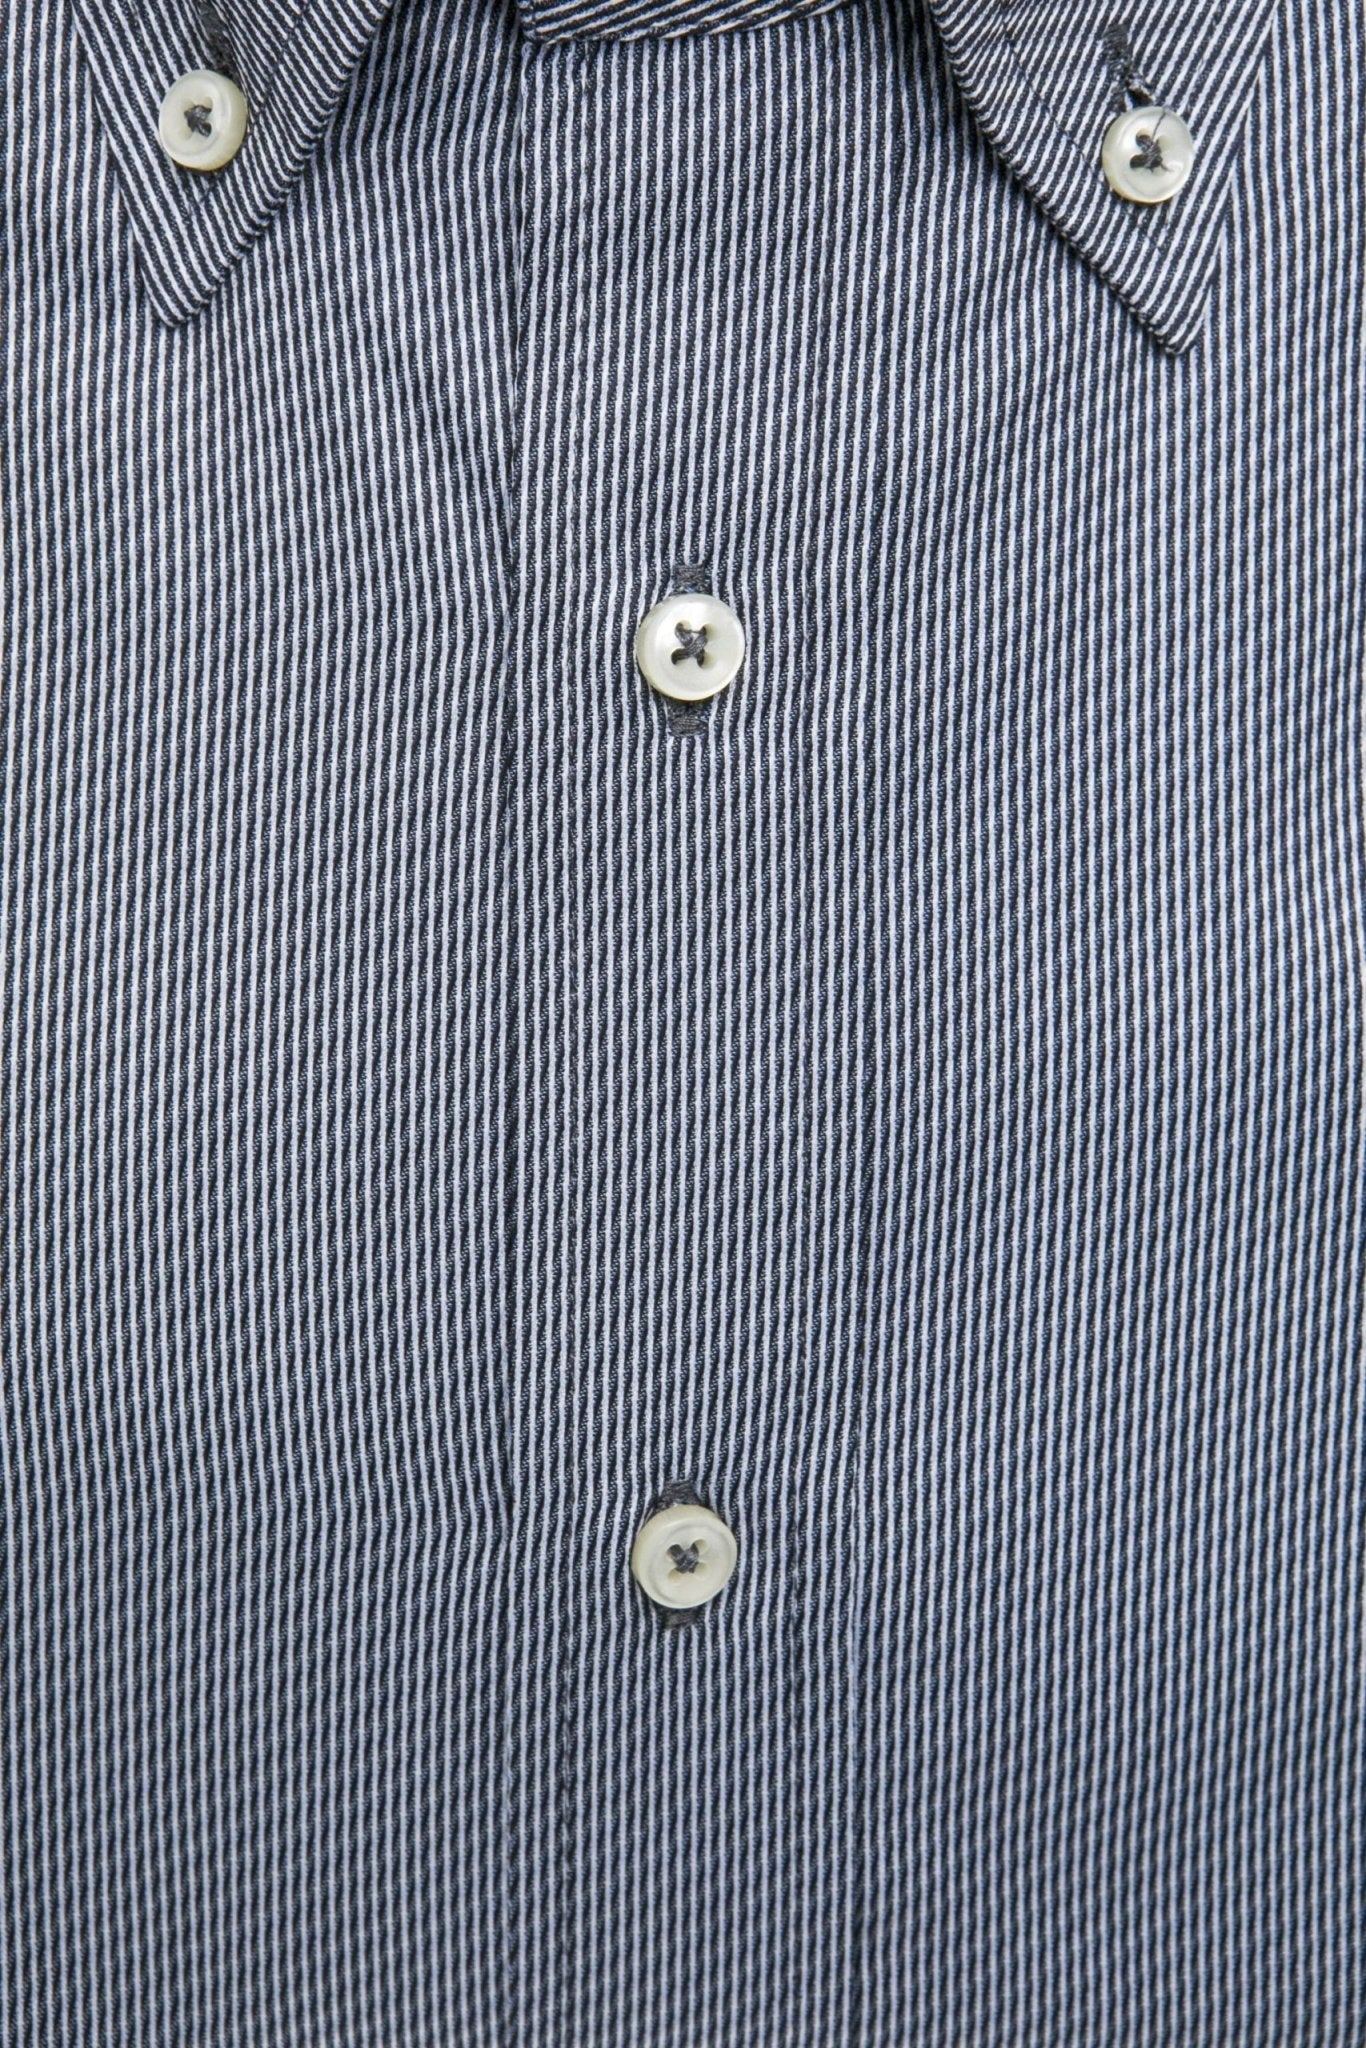 Robert Friedman Blue Cotton Shirt - Fizigo